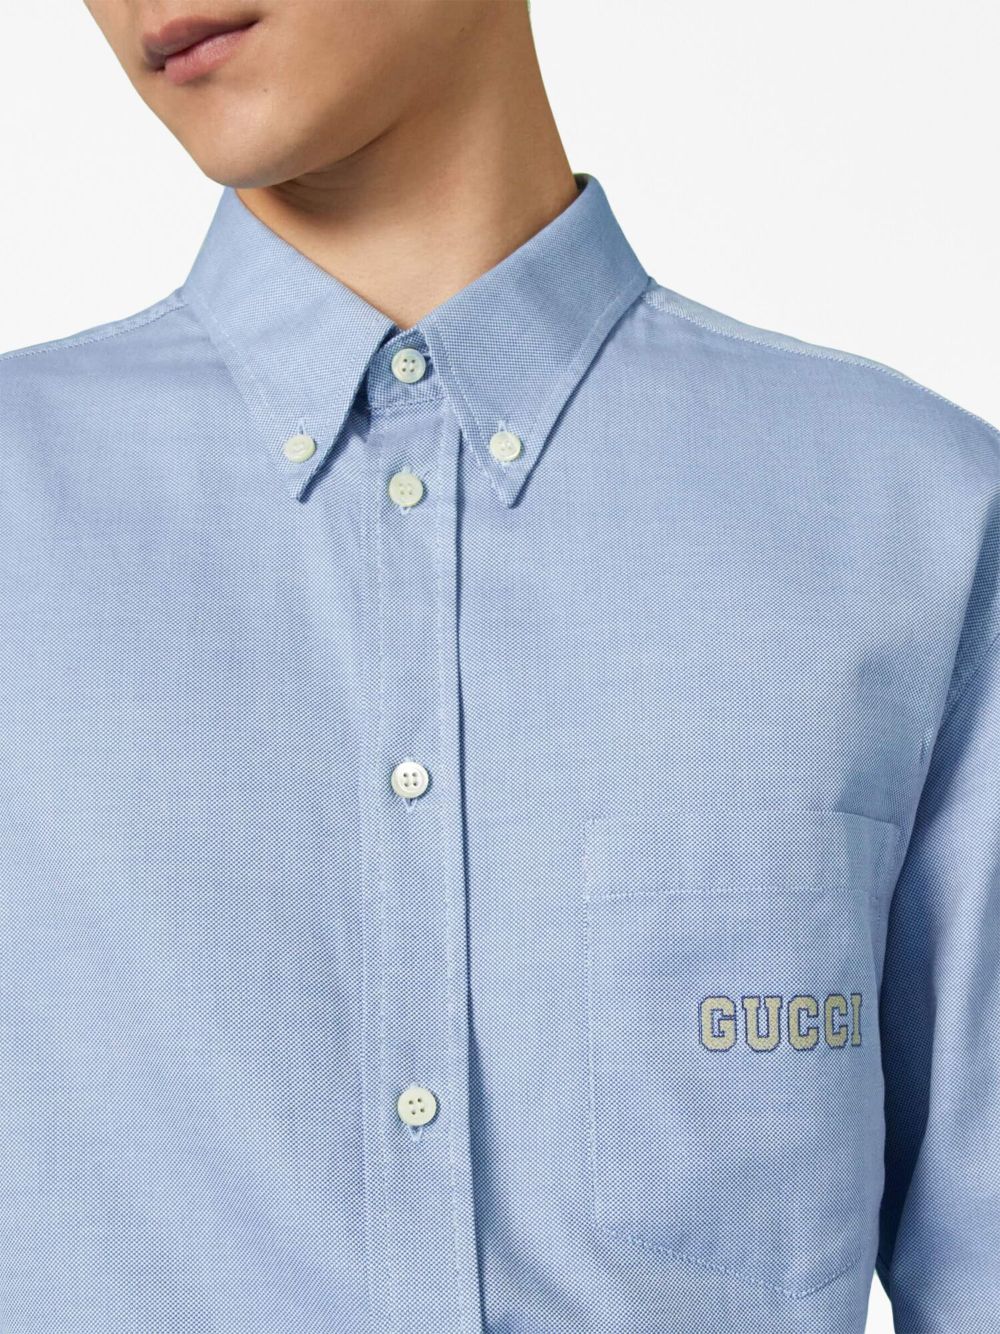 gucci button up shirt